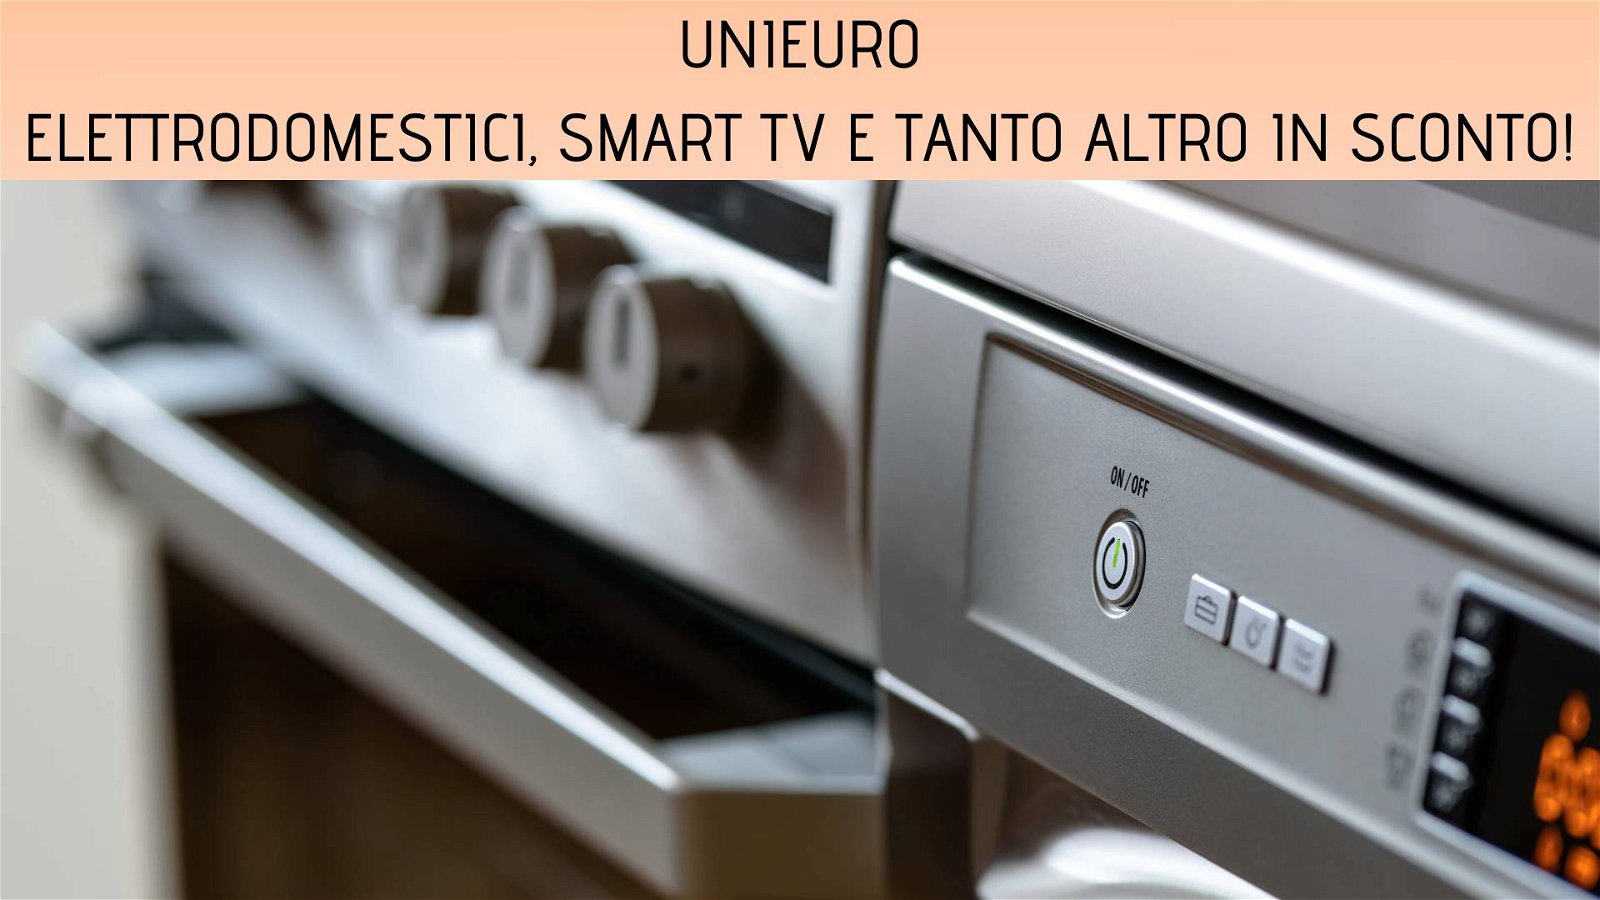 Immagine di Unieuro: elettrodomestici, smart Tv e tanto altro nelle offerte di oggi